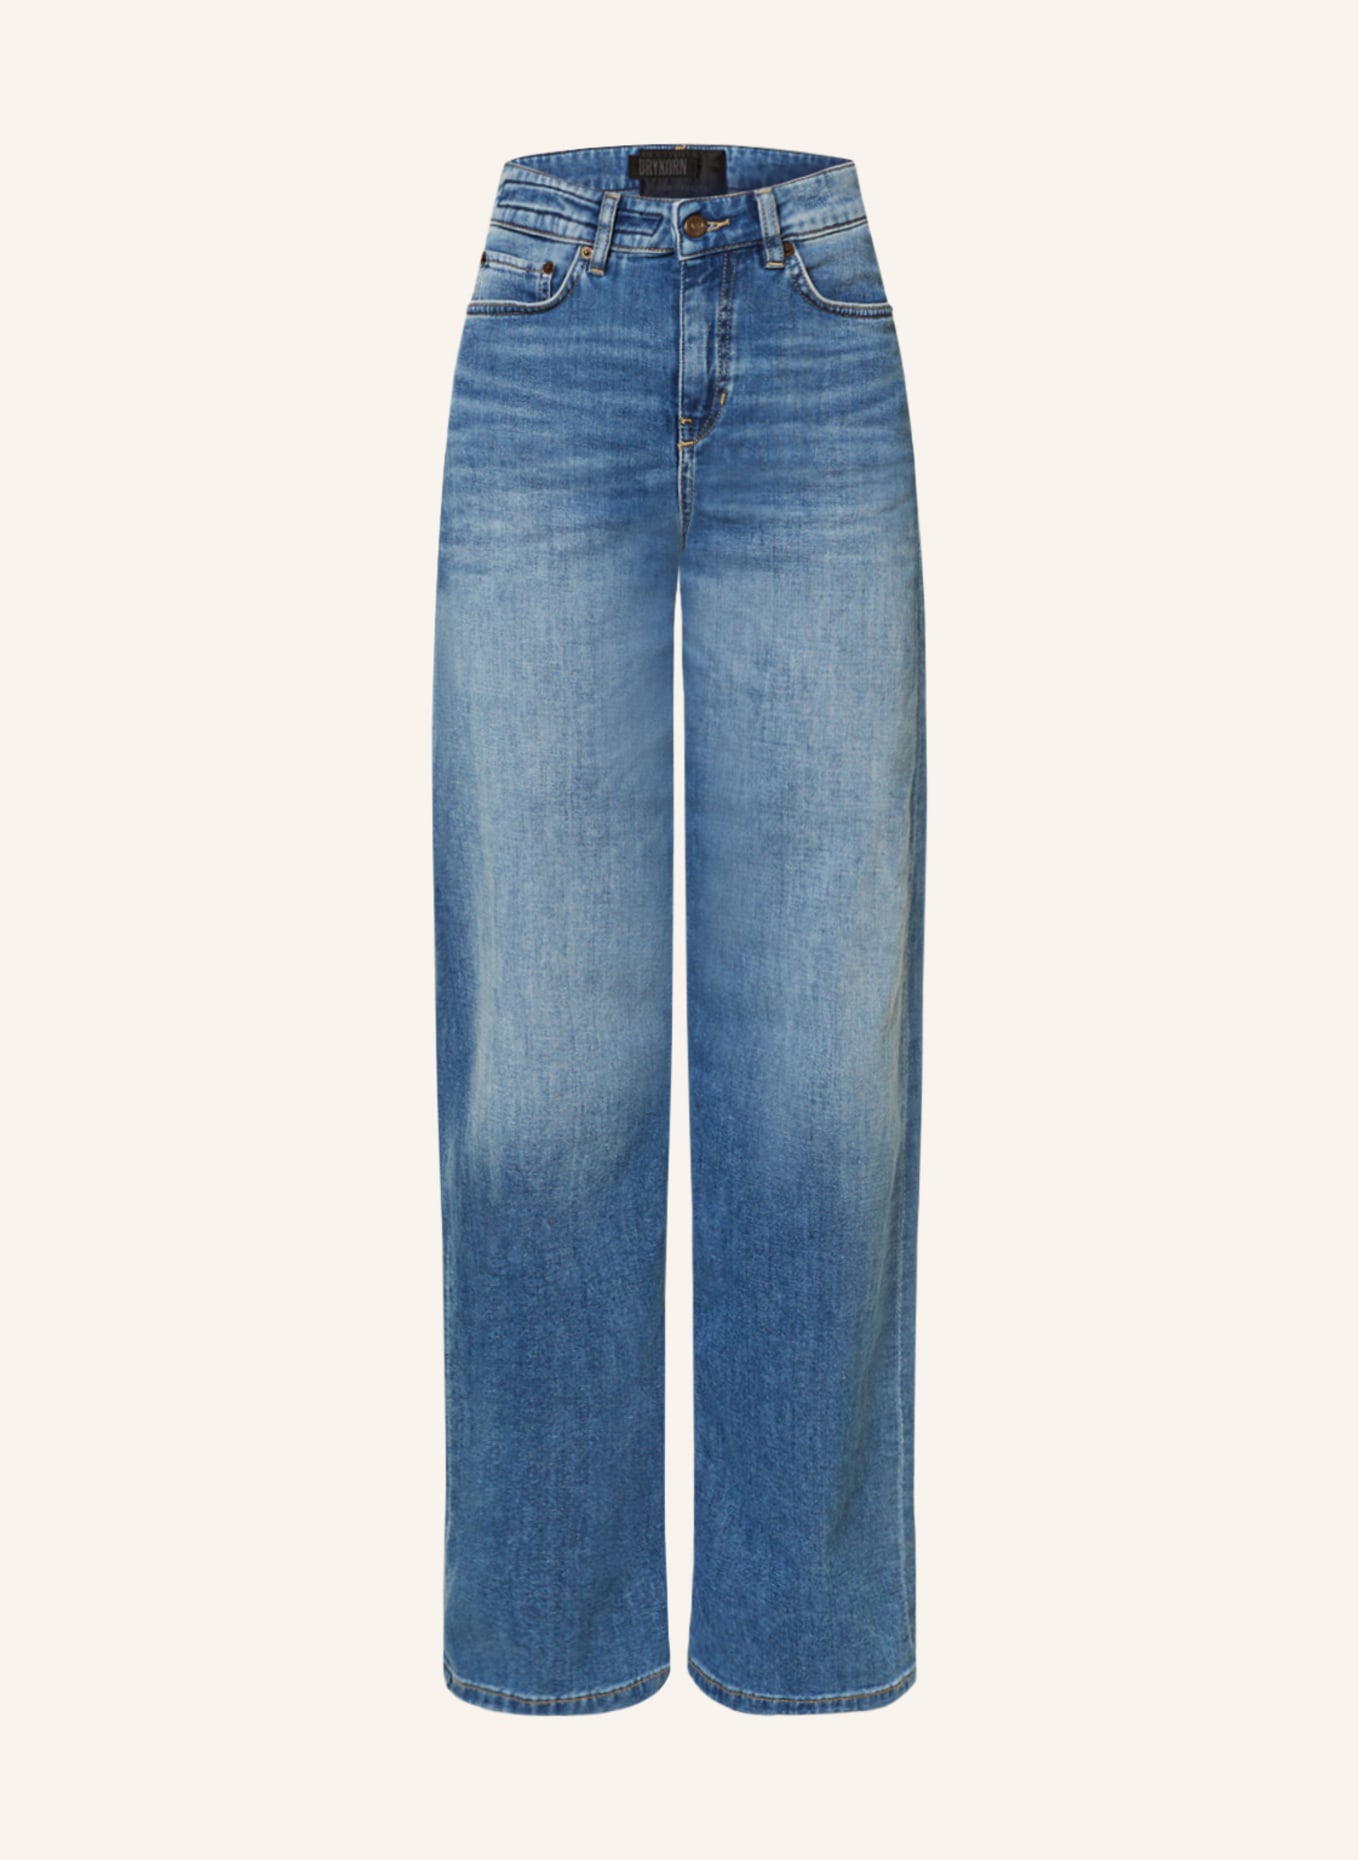 DRYKORN Boyfriend Jeans MEDLEY, Farbe: 3610 BLAU (Bild 1)